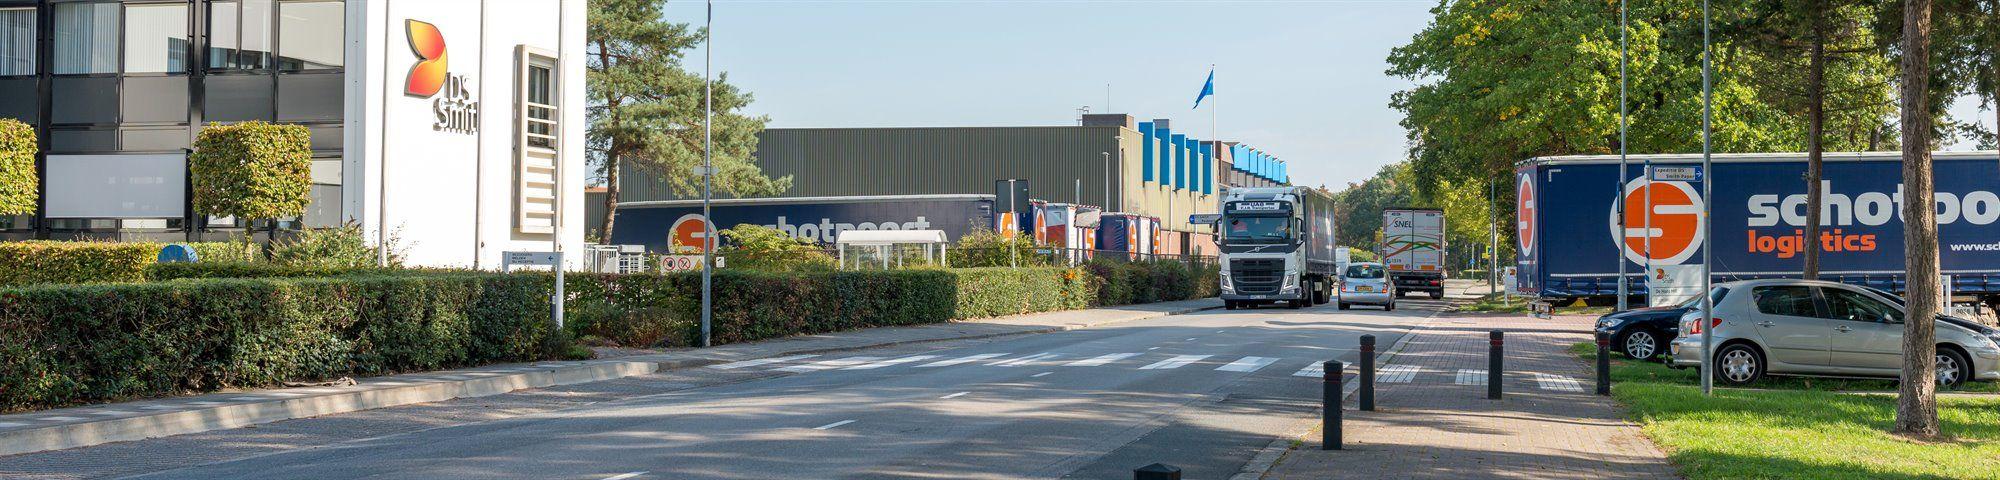 Vrachtwagen op de weg nabij papierfabriek Eerbeek